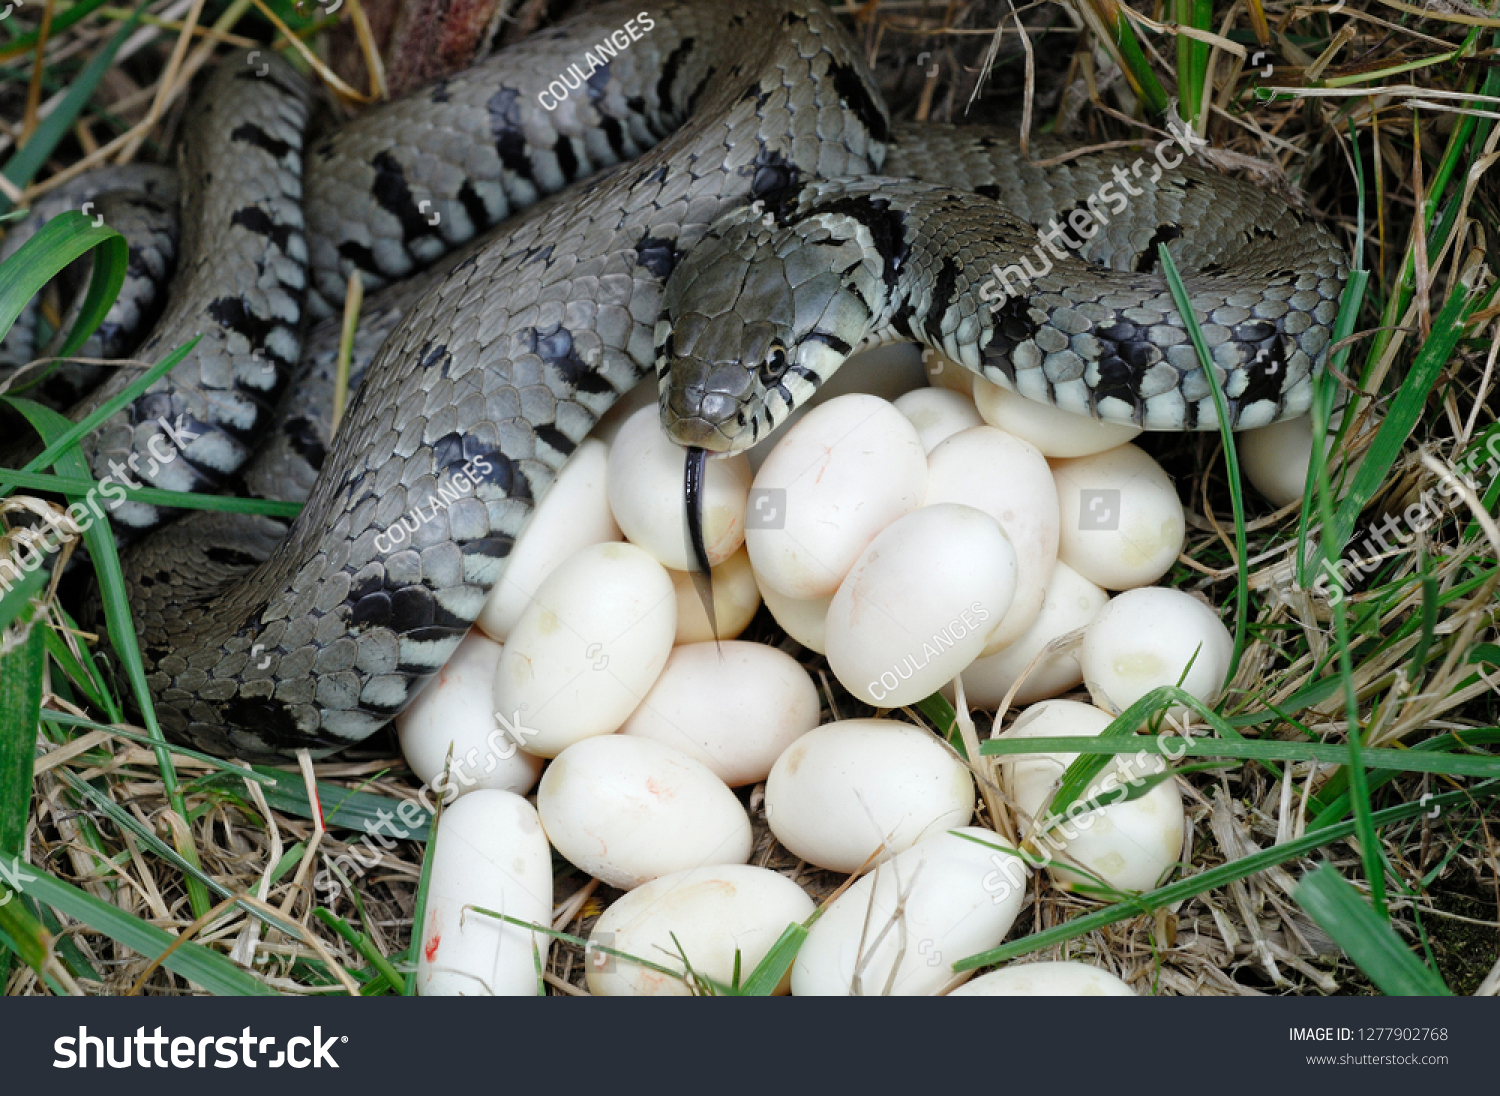 Яйца змей видео. Яйца гадюки обыкновенной.